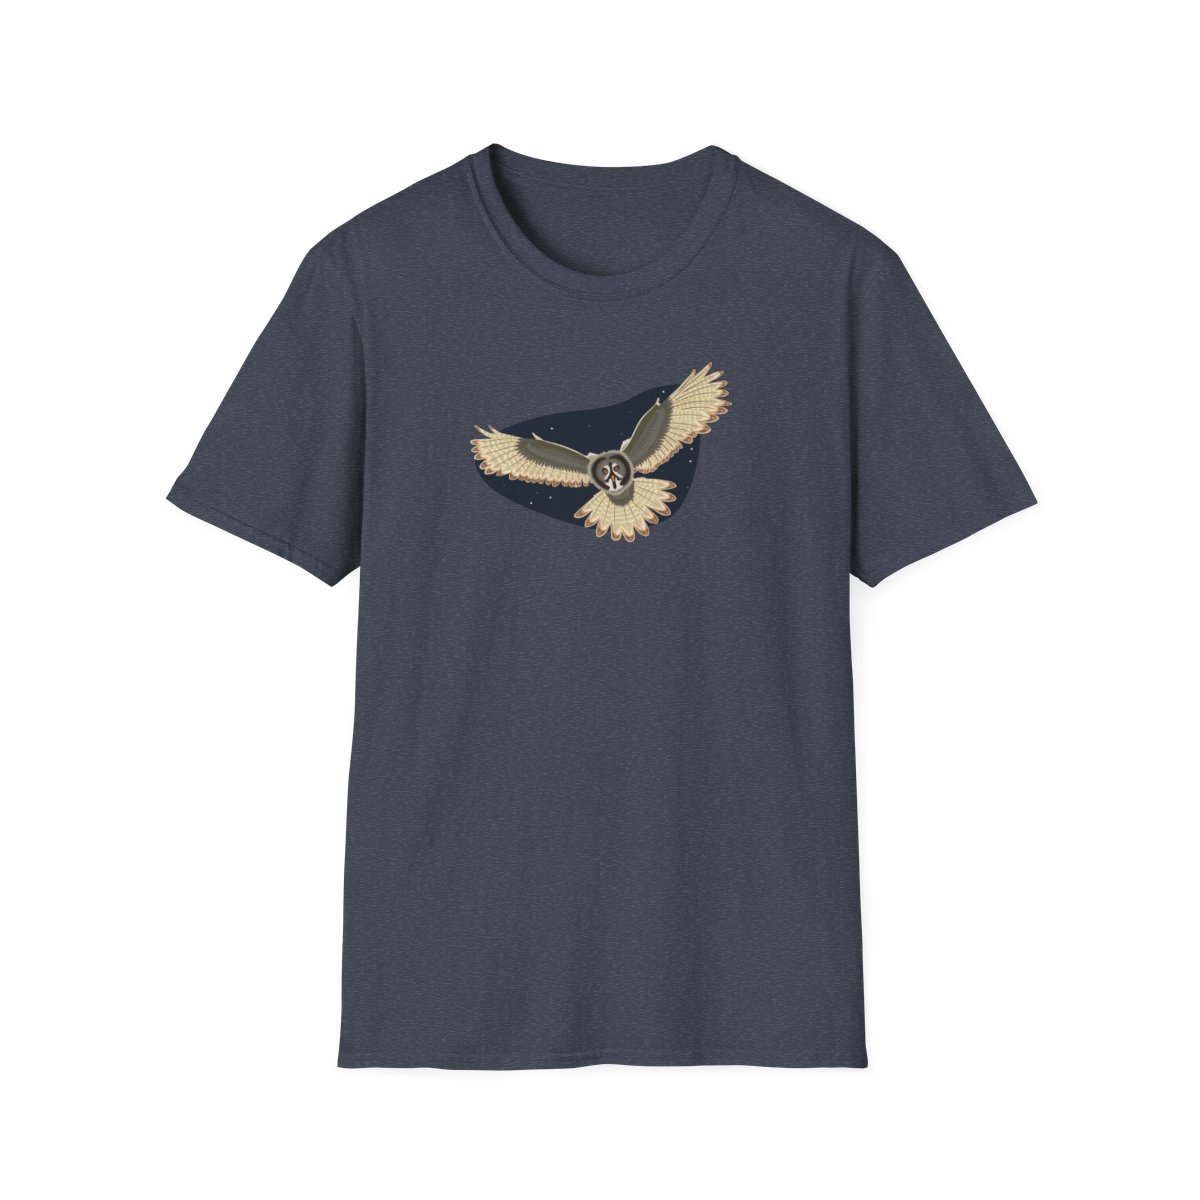 Owl Unisex Softstyle T-Shirt product main image